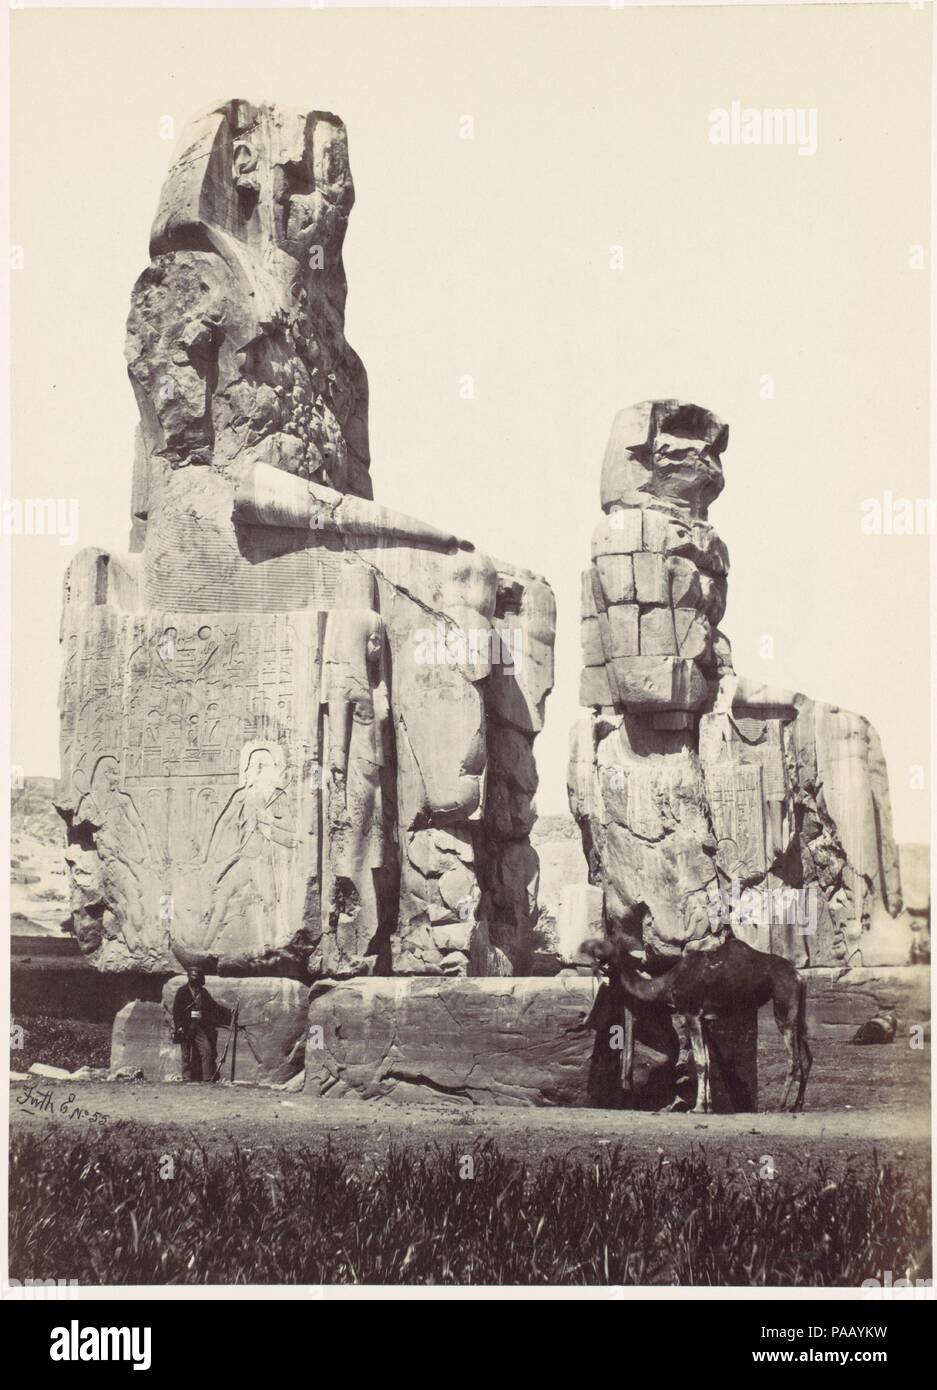 Die Statuen von Memnon. Ebene von Theben. Artist: Francis Frith (British, Chesterfield, Derbyshire 1822-1898 Cannes, Frankreich). Datum: 1857. Museum: Metropolitan Museum of Art, New York, USA. Stockfoto